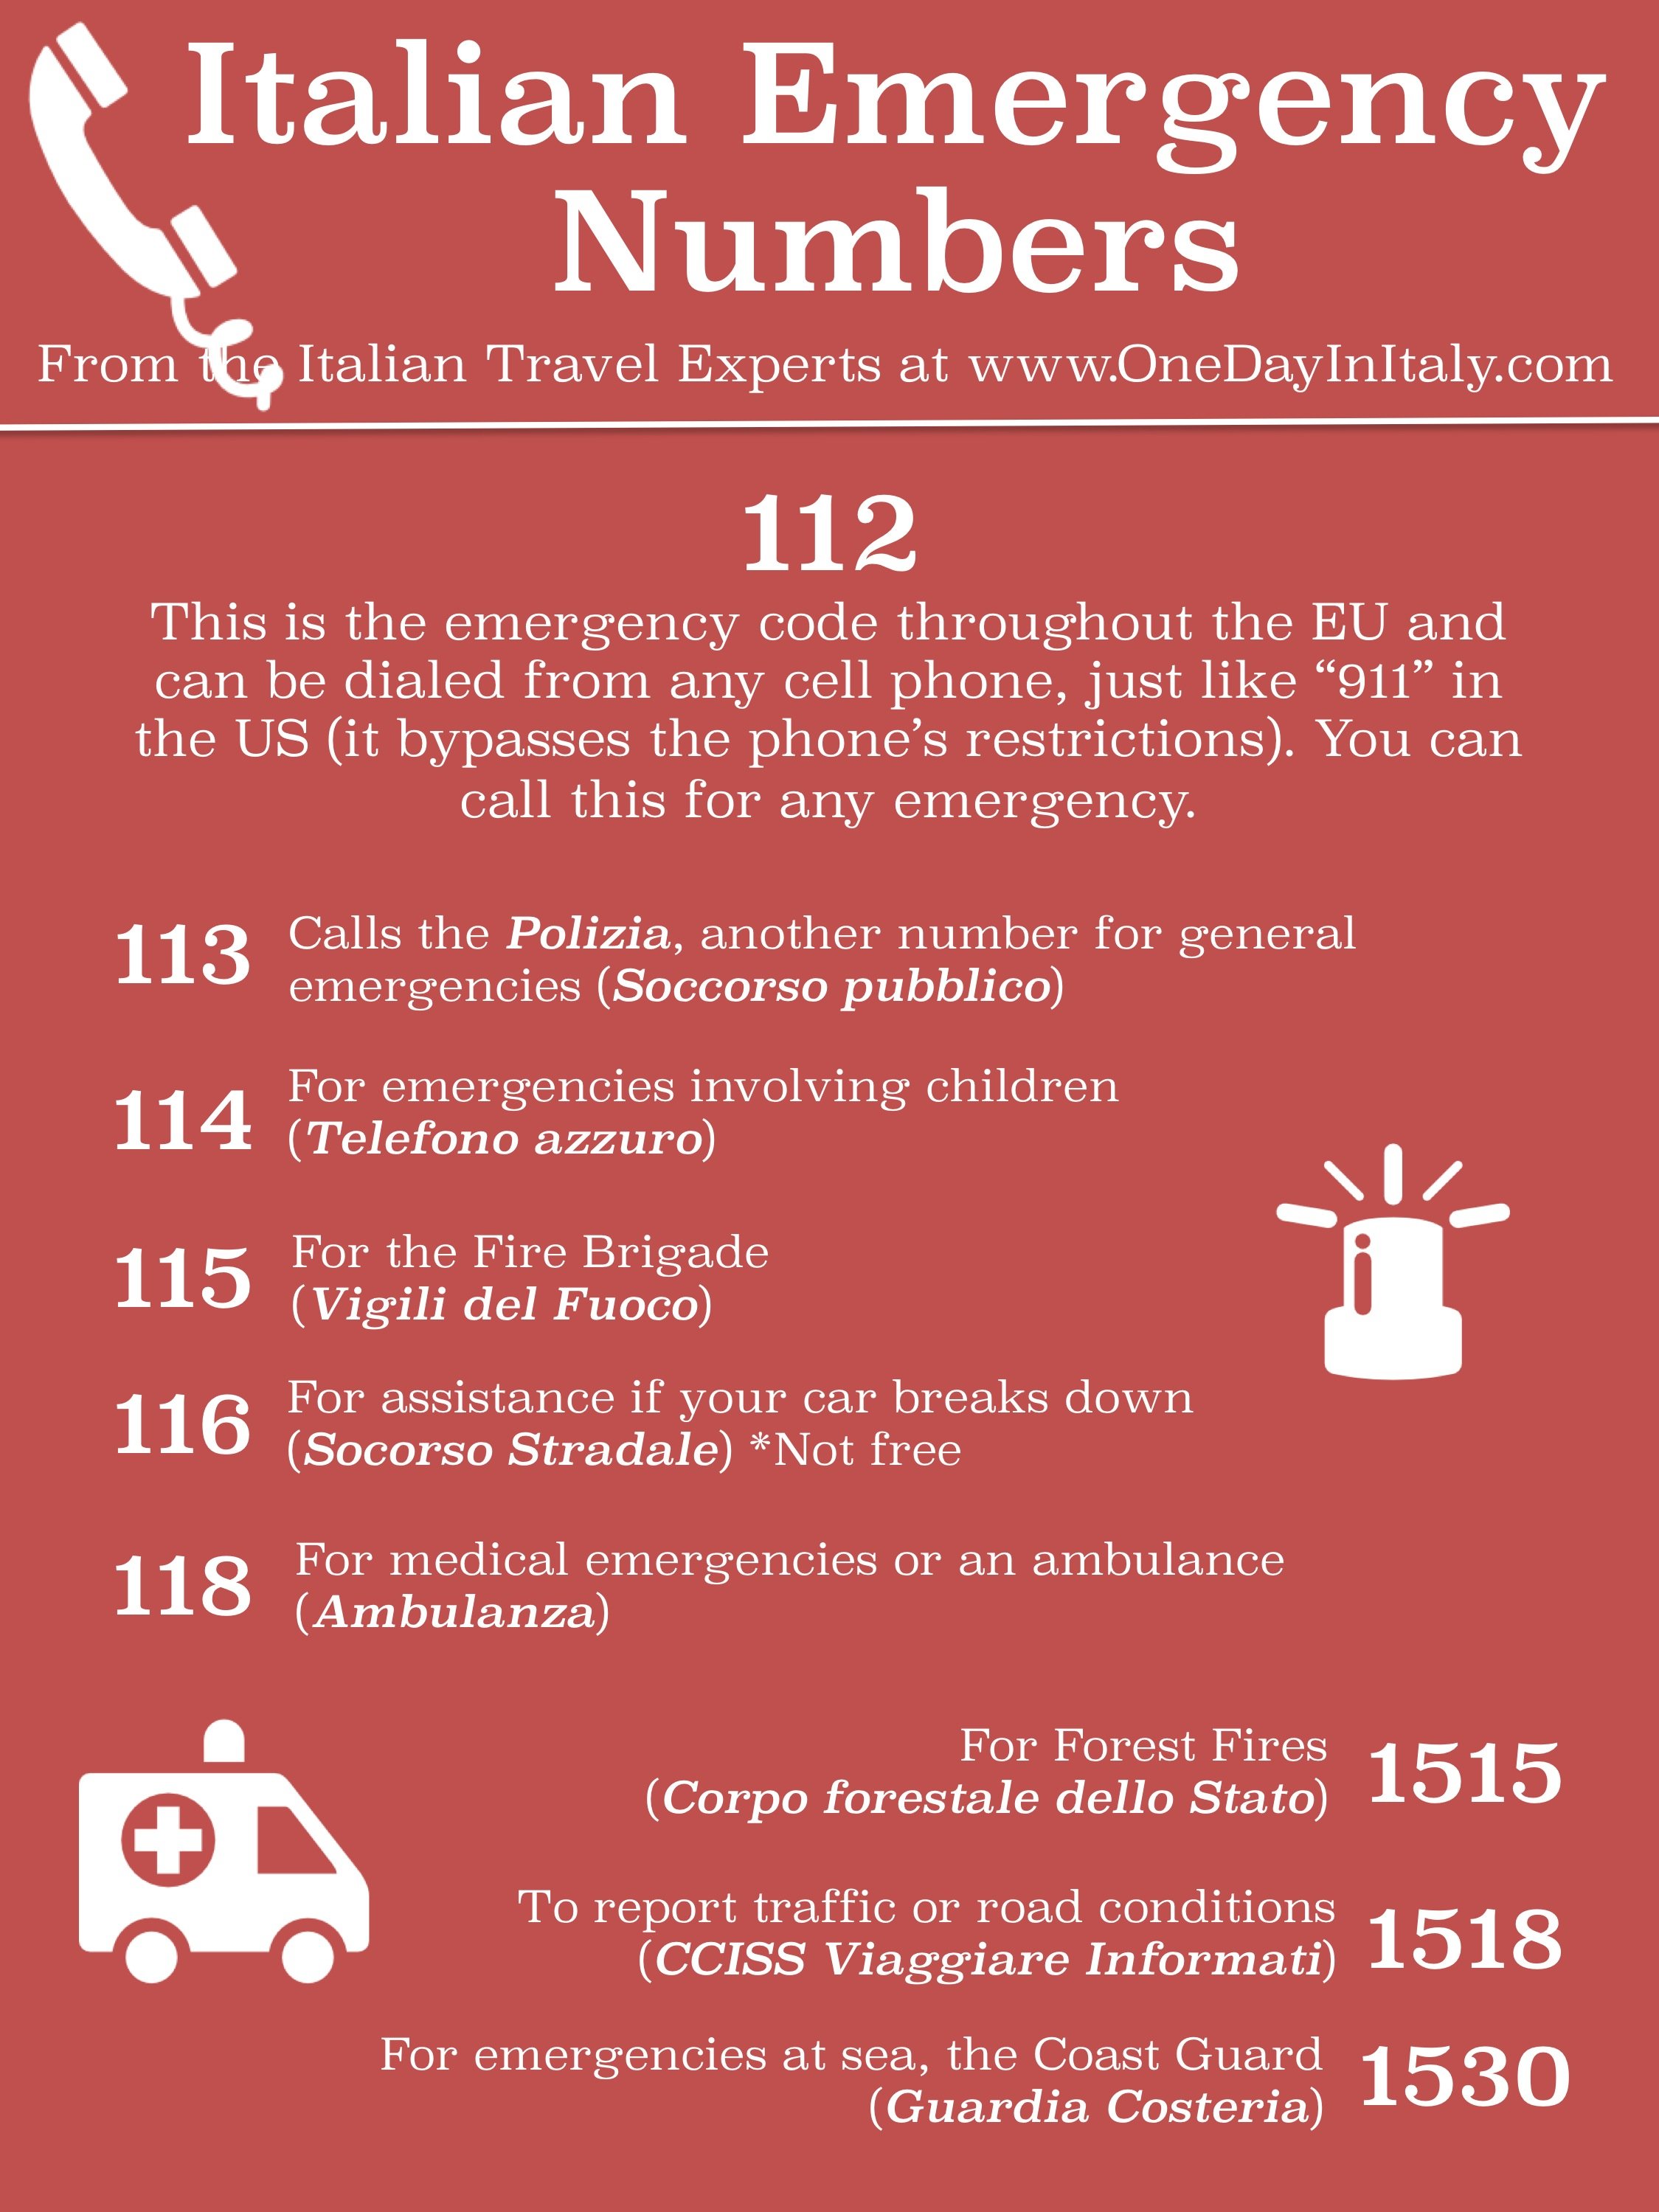 Emergency Numbers